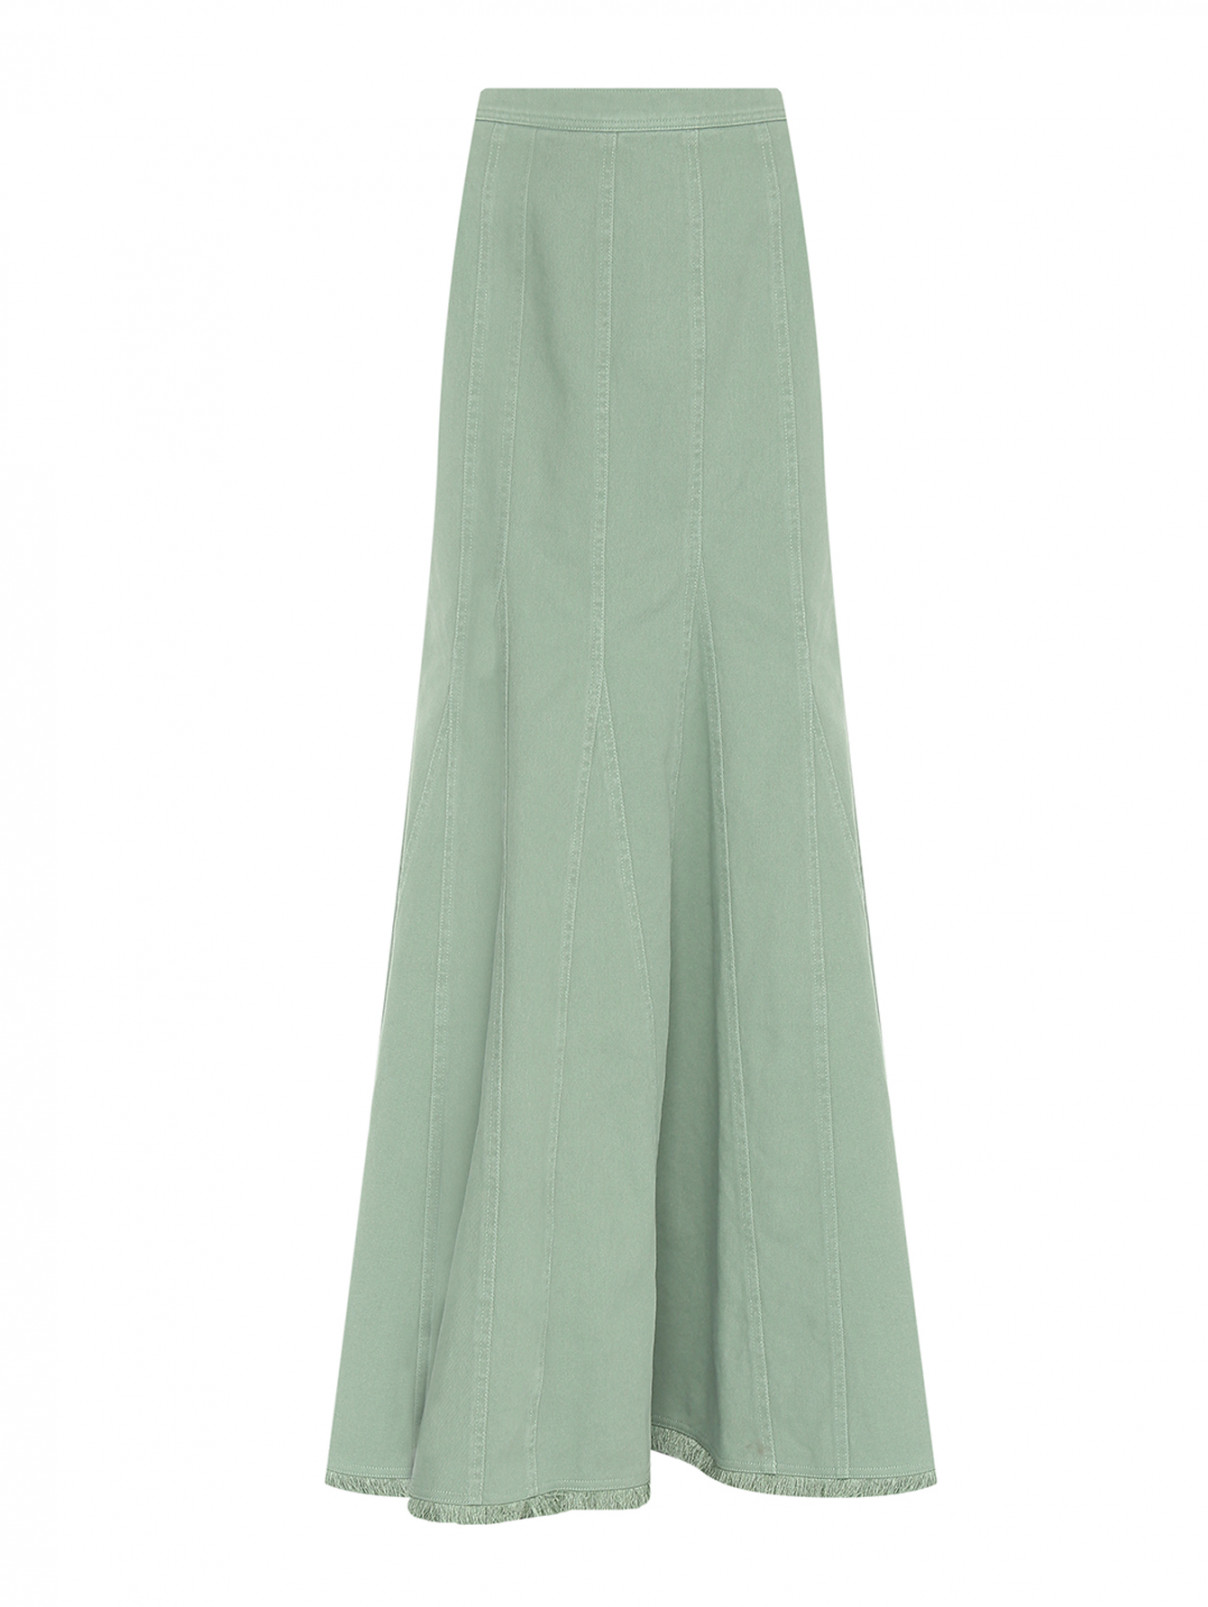 Джинсовая юбка-макси Max Mara  –  Общий вид  – Цвет:  Зеленый